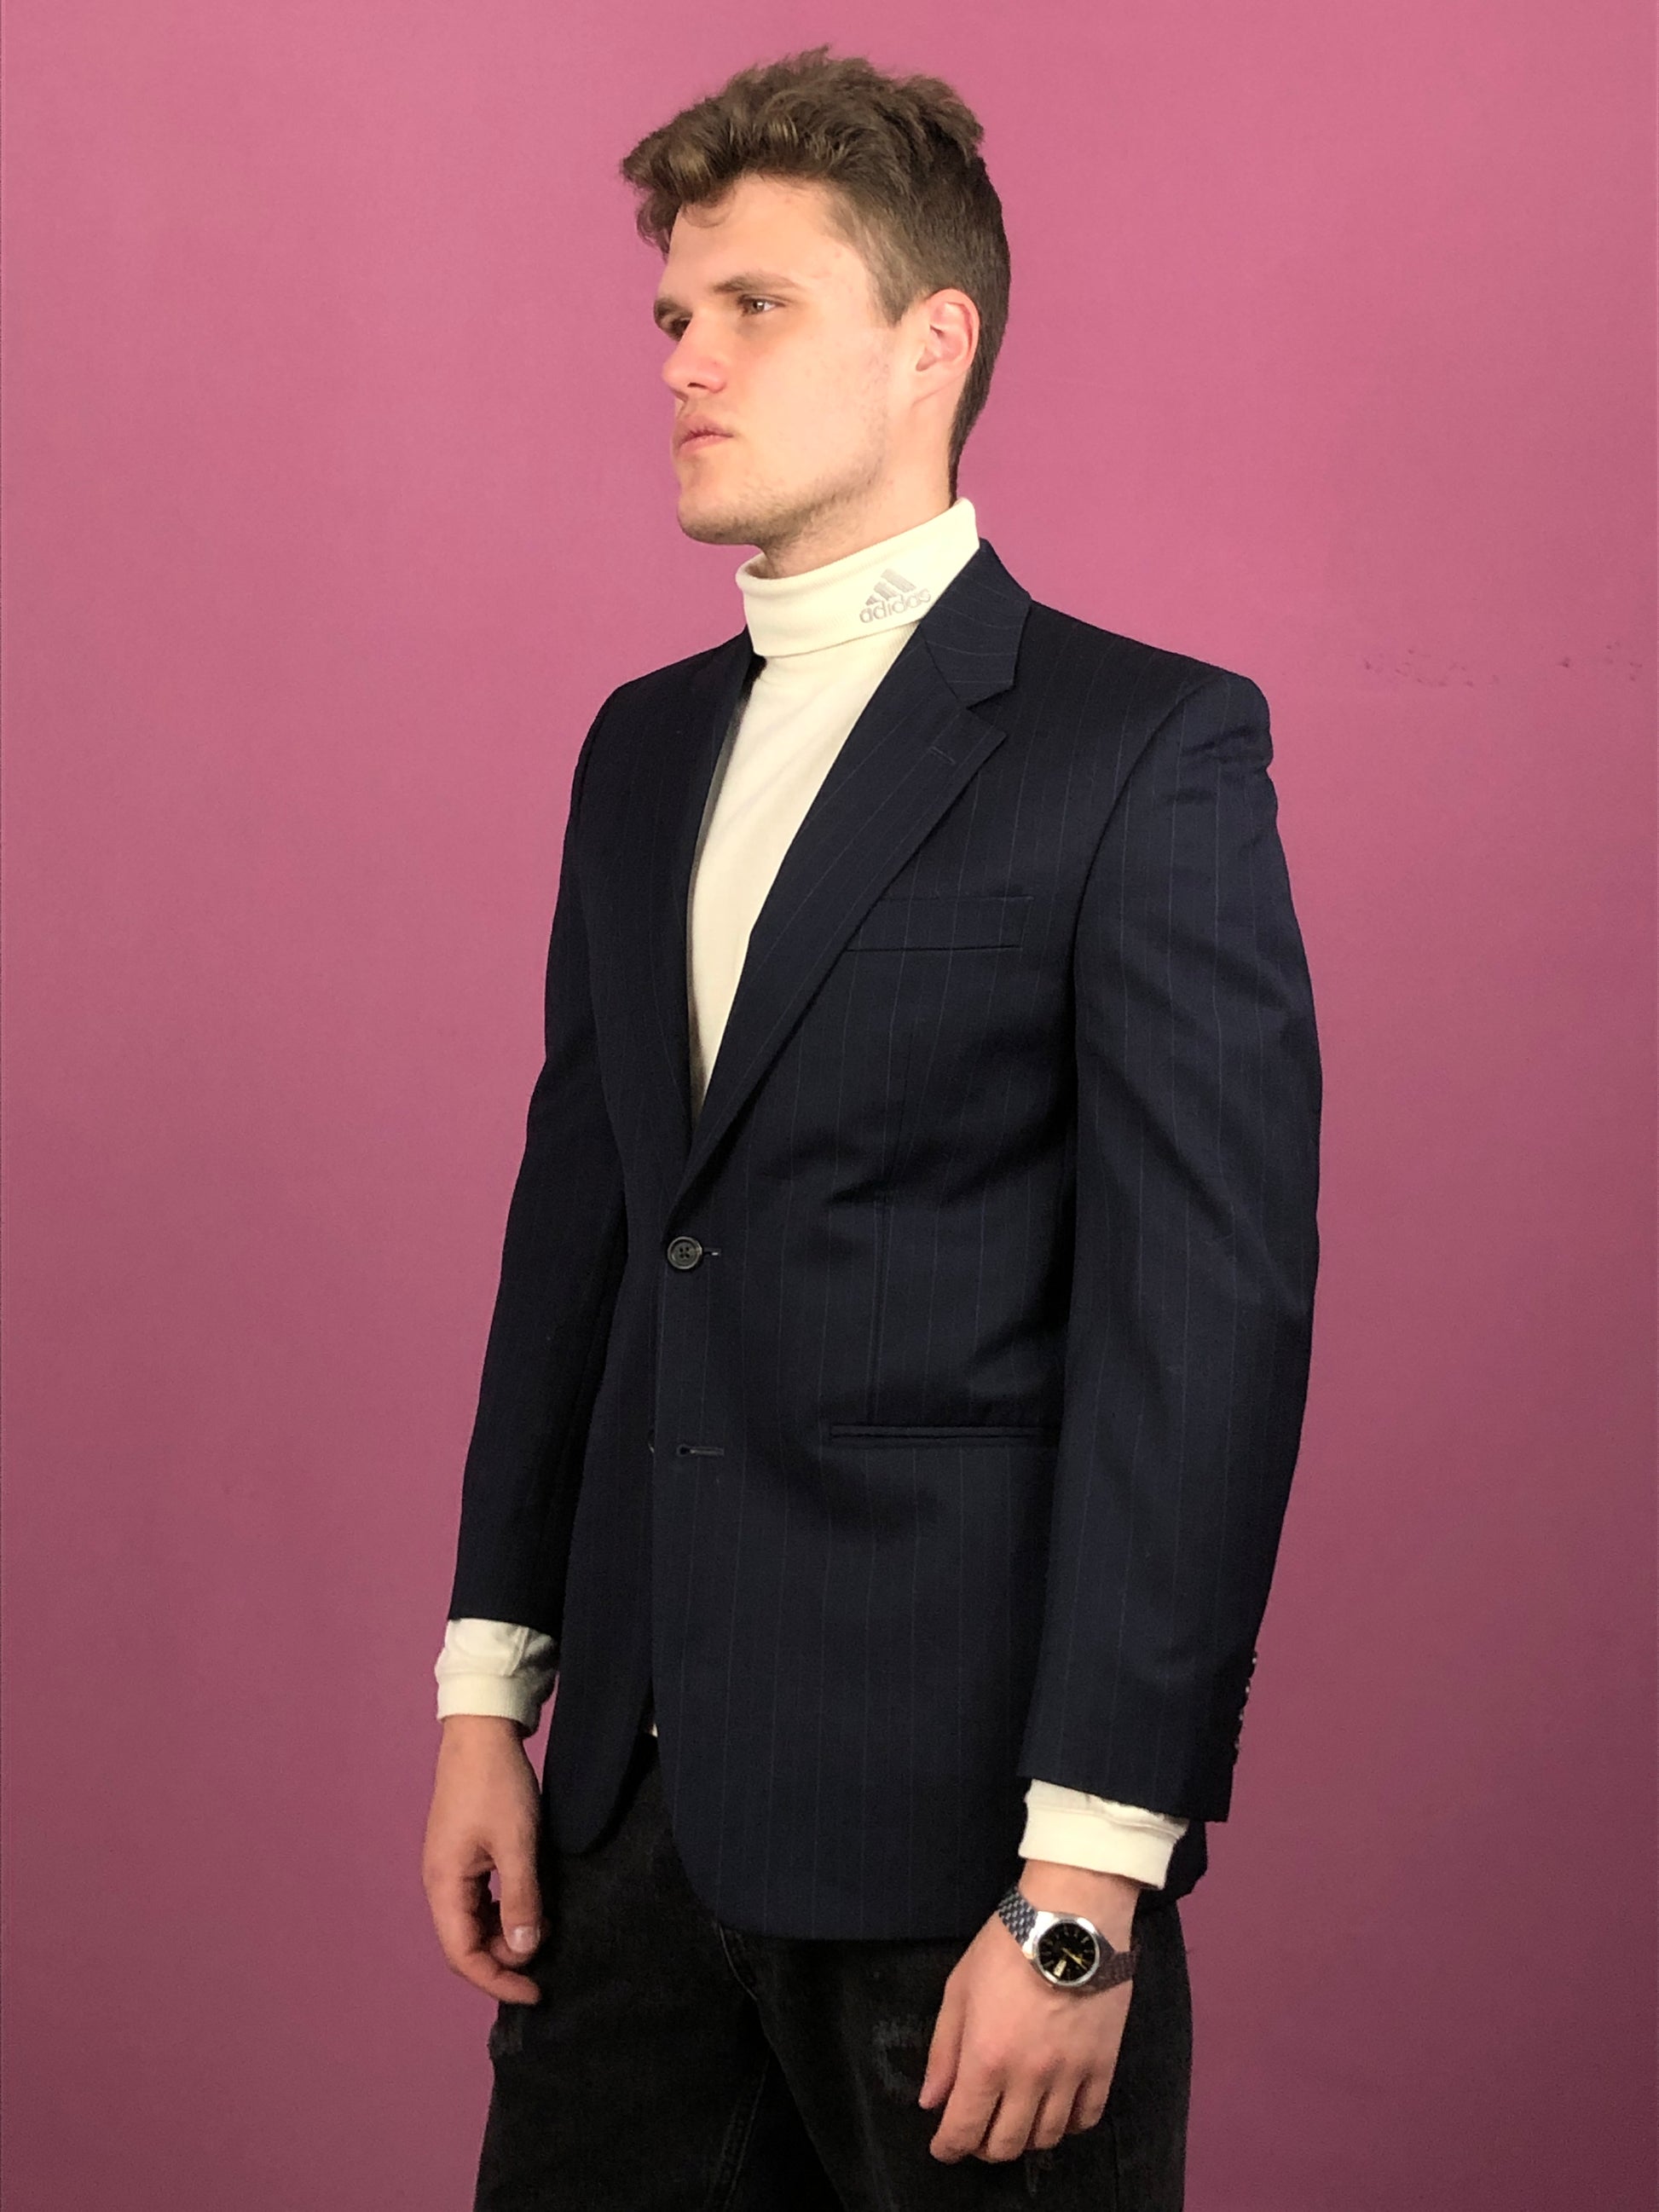 Ralph Lauren Vintage Men's Suit Blazer - Medium Black Wool